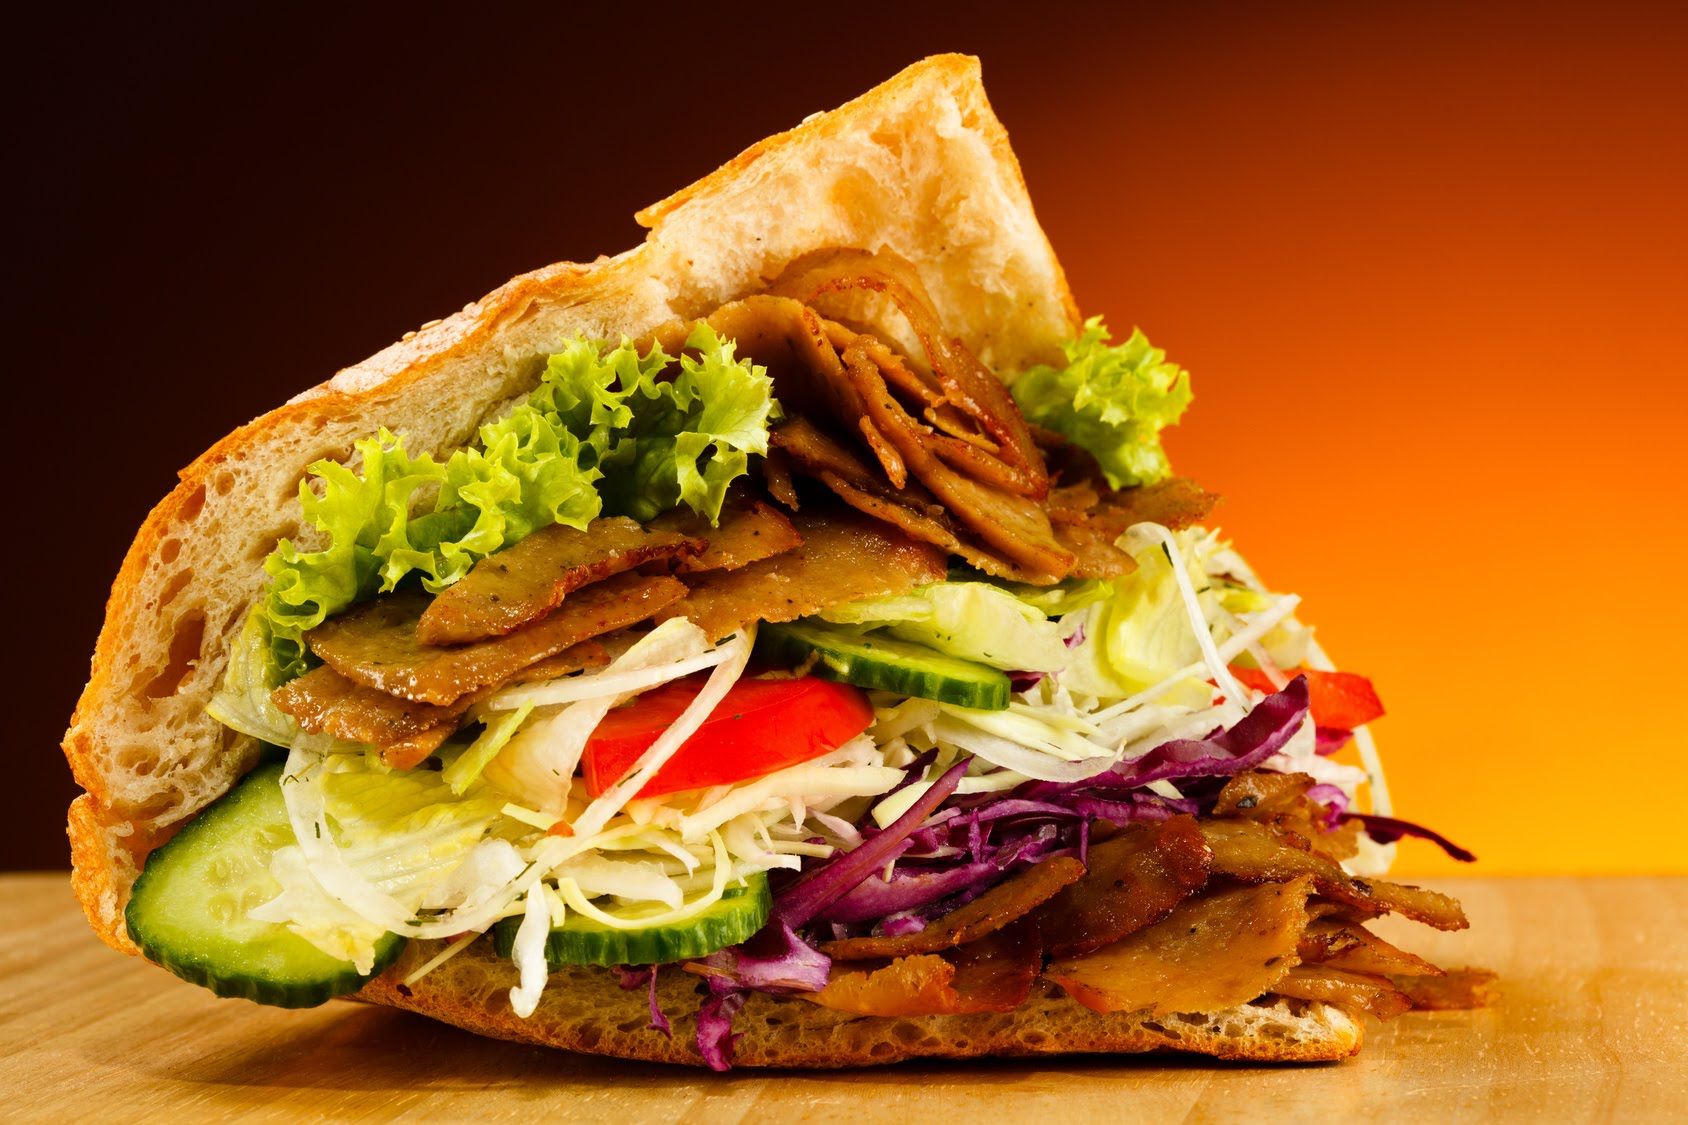 Huyền thoại bánh mì Thổ Nhĩ Kỳ: Doner Kebab.